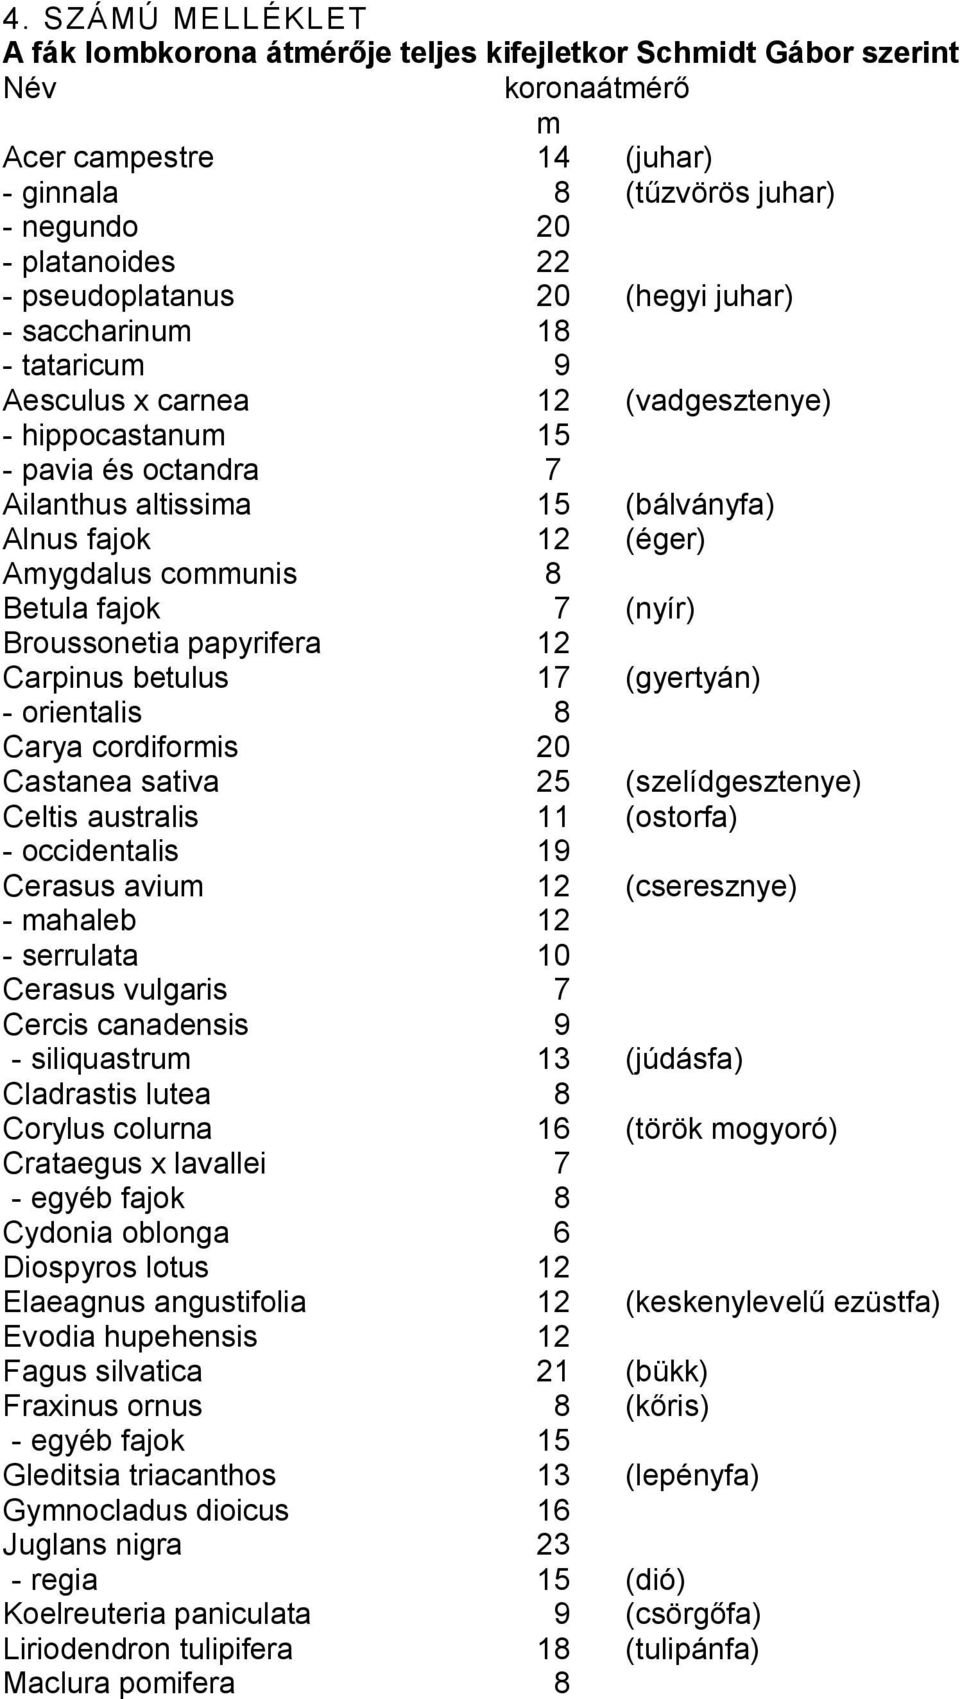 Amygdalus communis 8 Betula fajok 7 (nyír) Broussonetia papyrifera 12 Carpinus betulus 17 (gyertyán) - orientalis 8 Carya cordiformis 20 Castanea sativa 25 (szelídgesztenye) Celtis australis 11